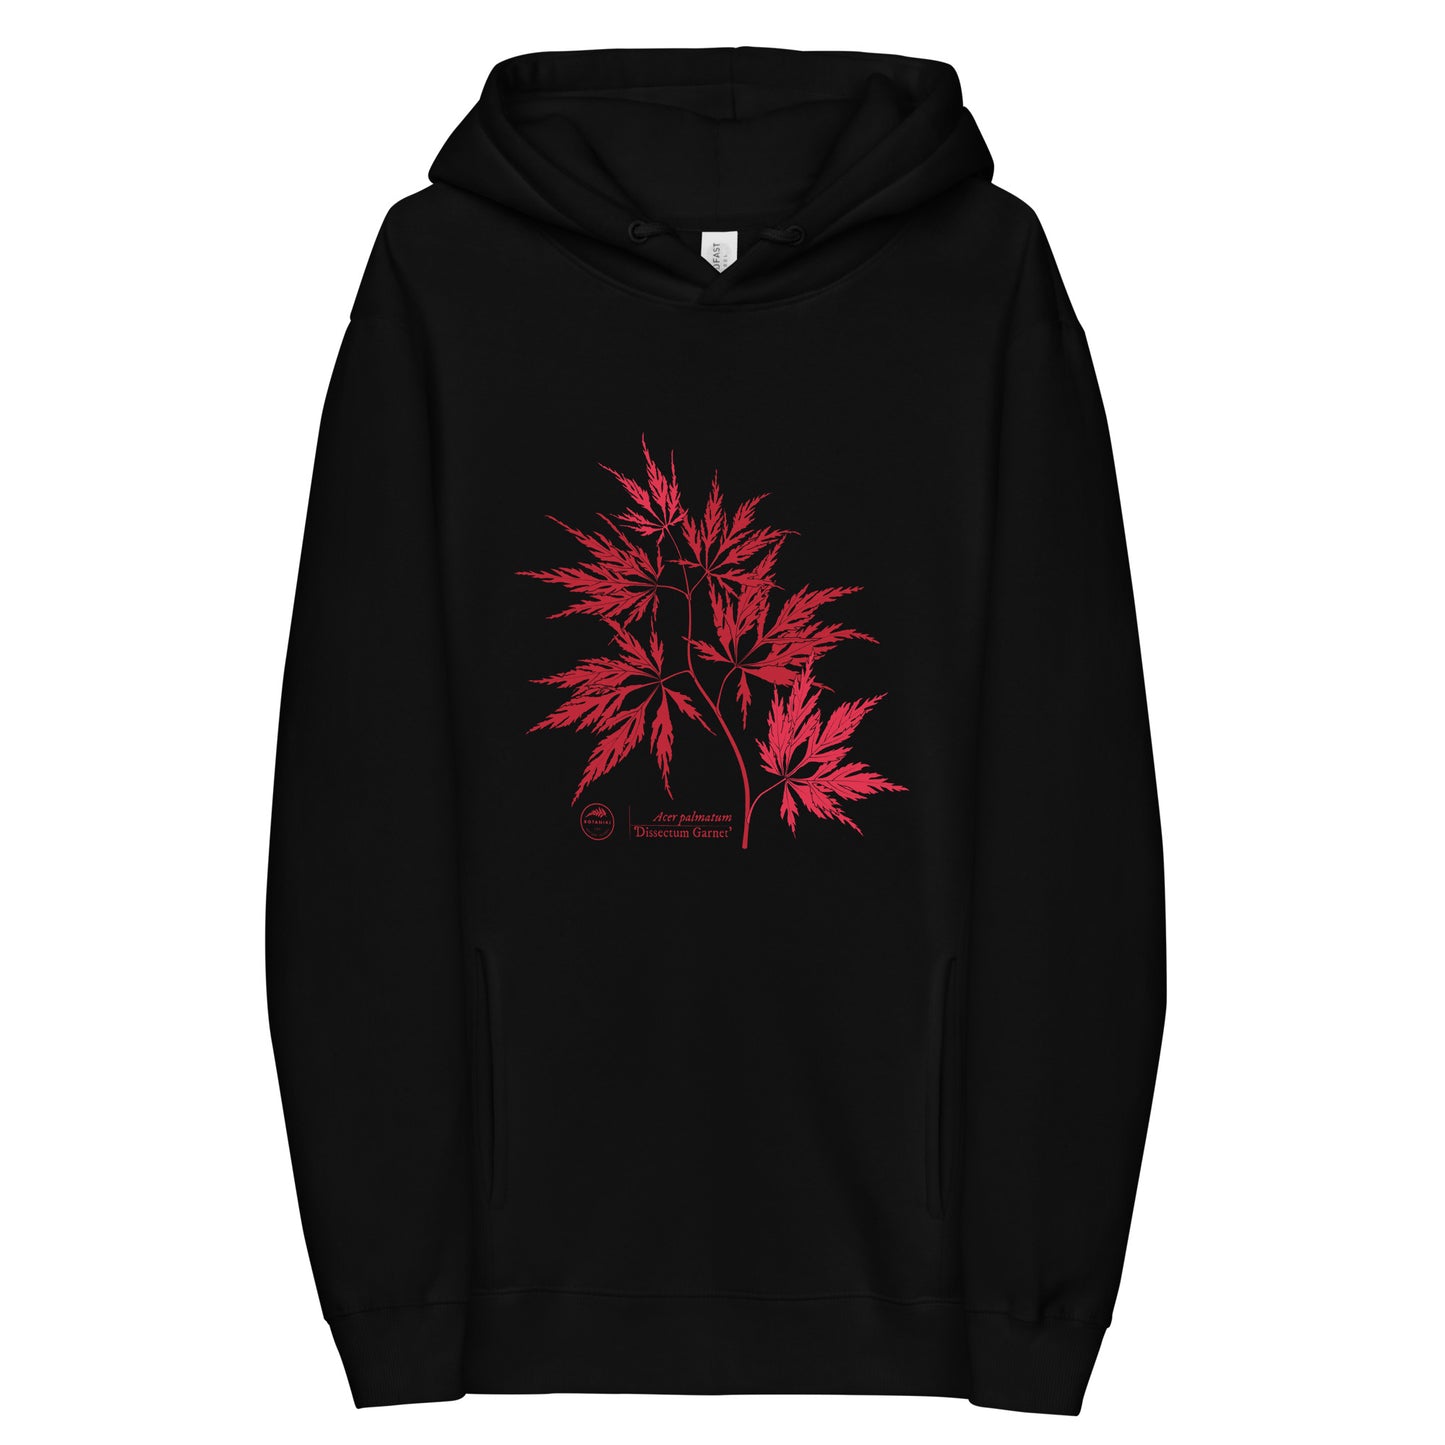 Unisex fashion hoodie - Japanese maple ‘Dissectum Garnet’